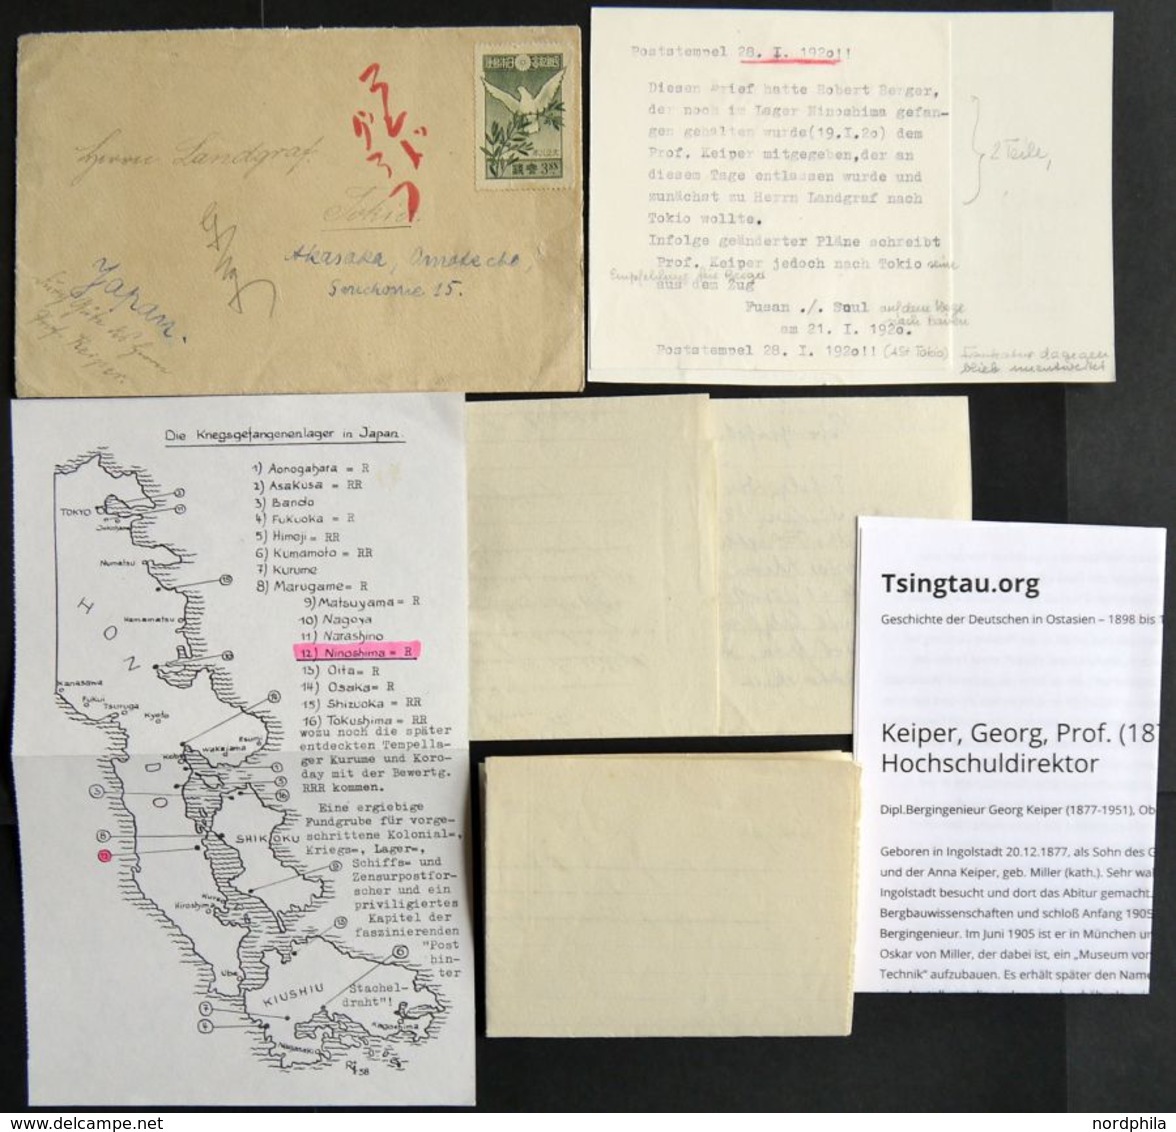 1920, Kiautschou-Kämpferhilfe, Brief Von Prof. Keiper An Herrn Landgraf In Tokio, Empfehlung Für Ninoshima Lagerinsassen - Ungebraucht